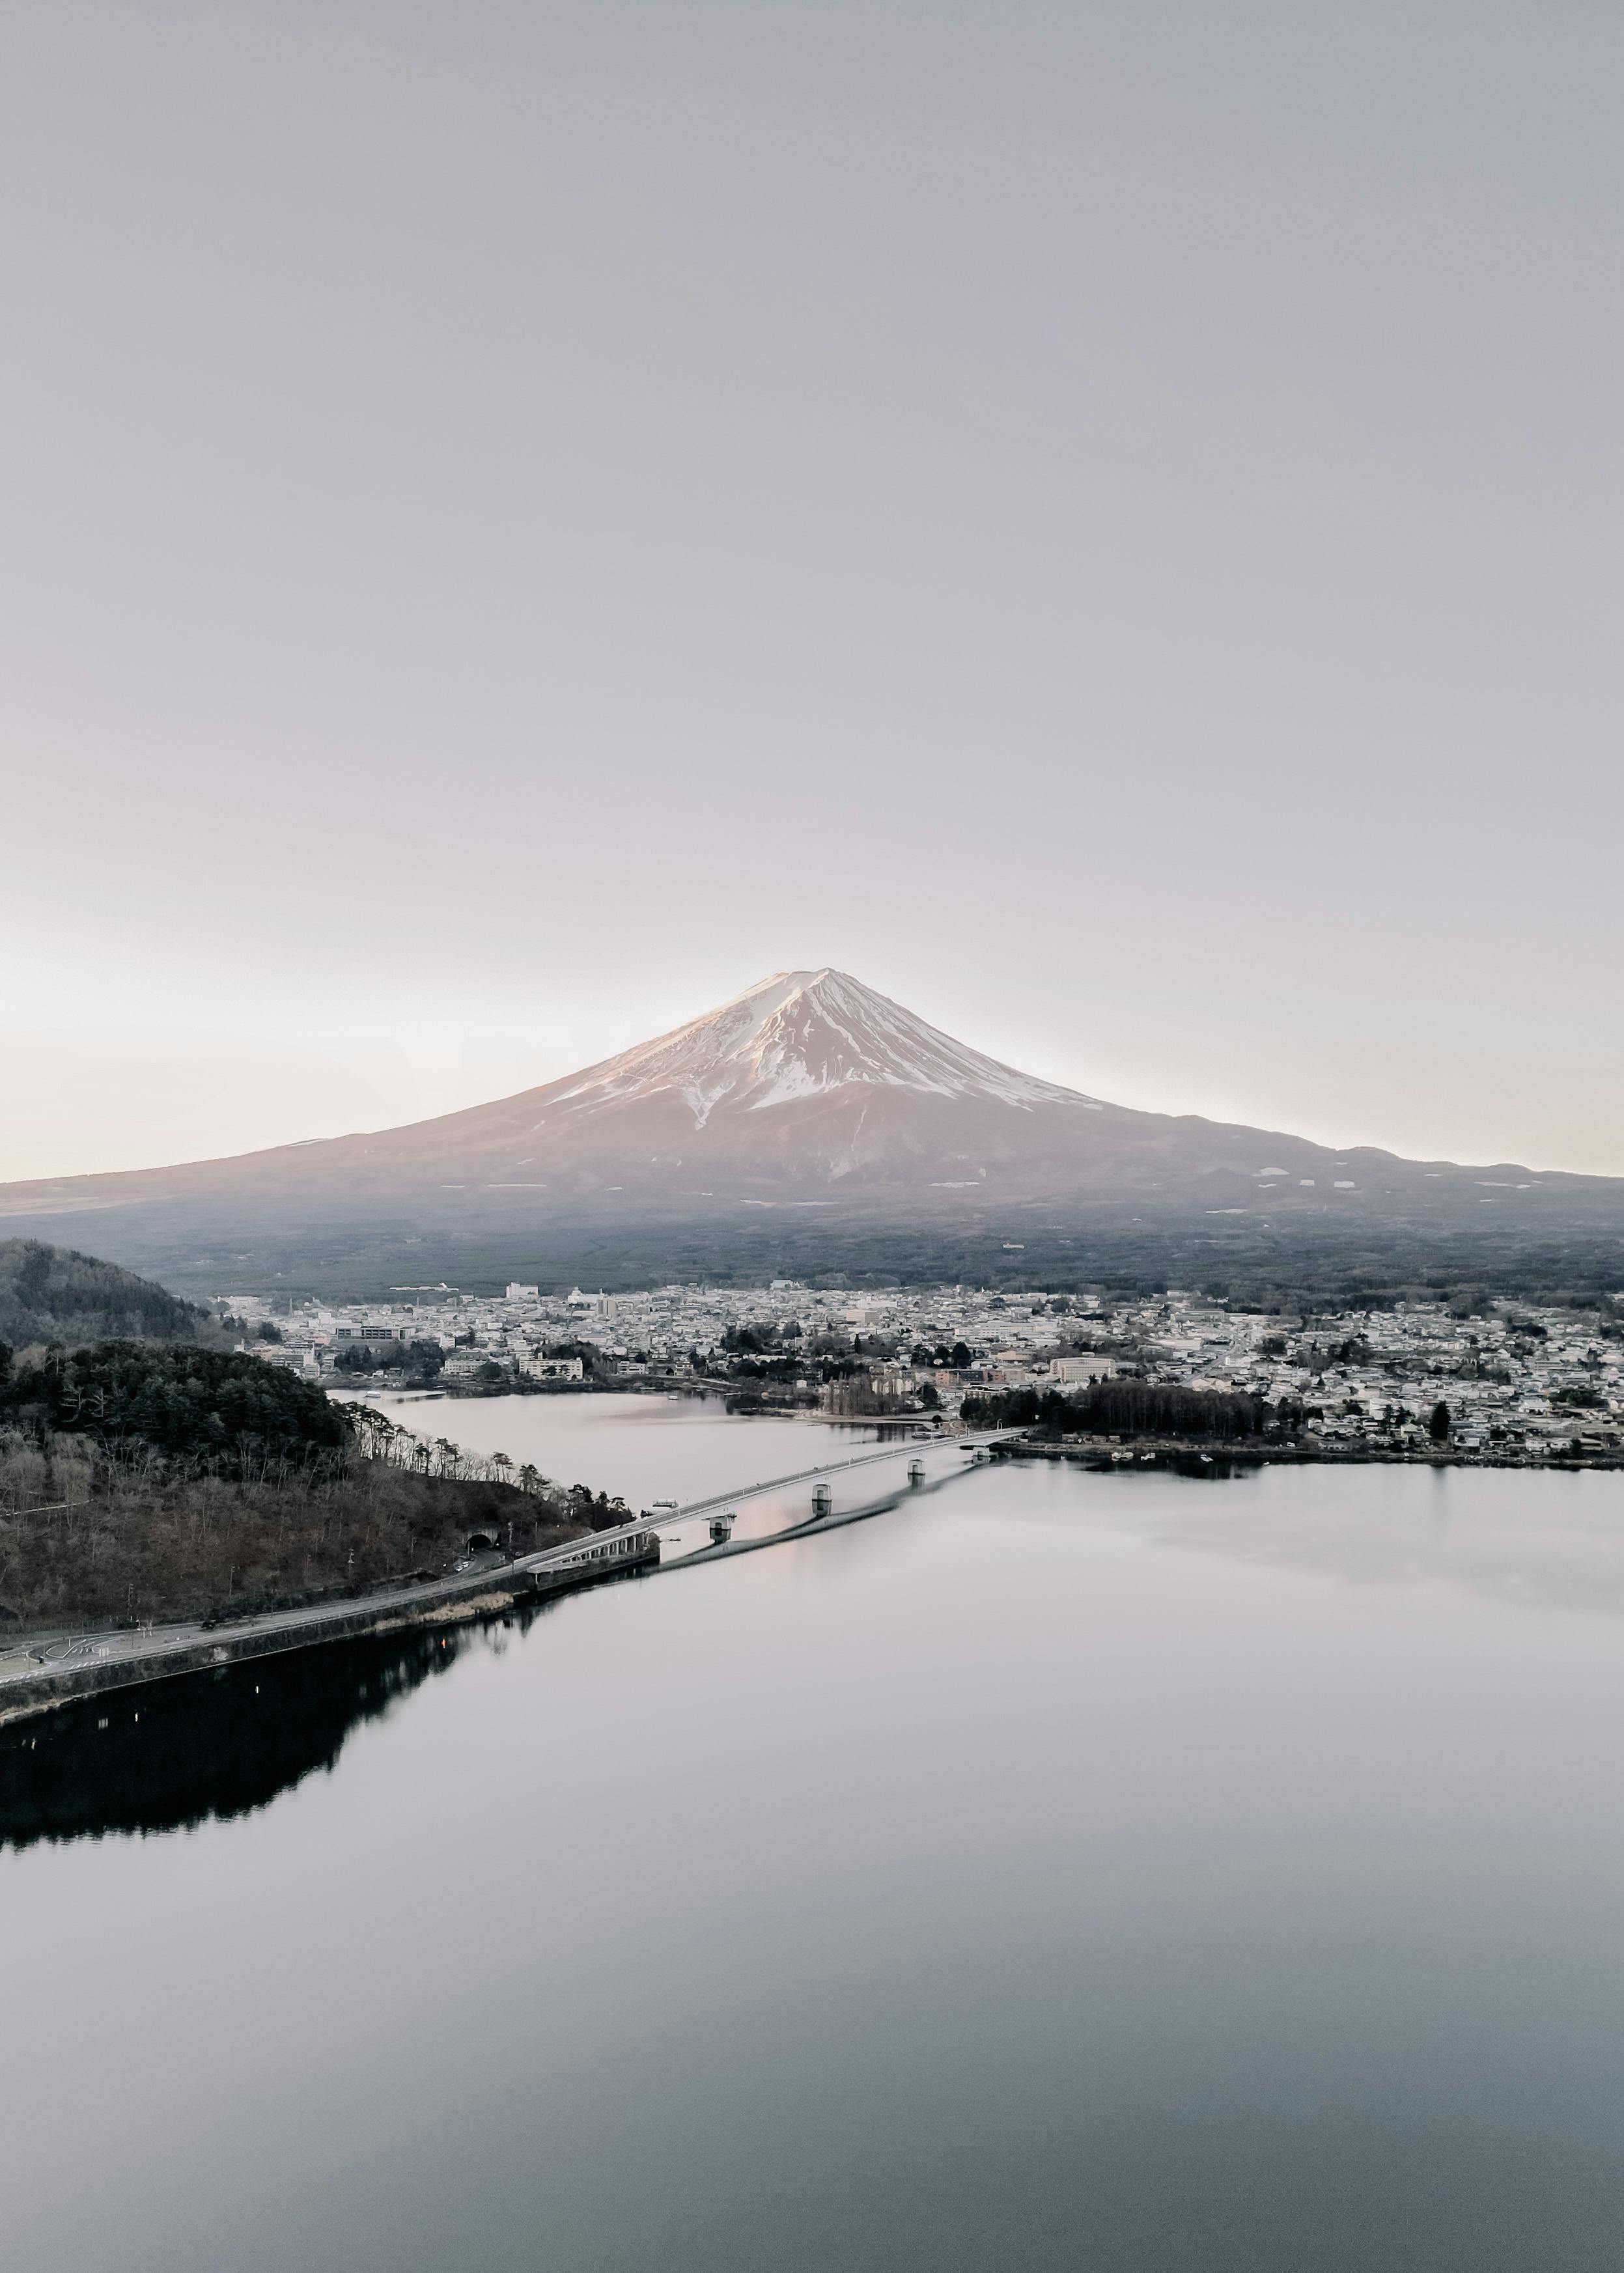 + ảnh đẹp nhất về Nhật Bản · Tải xuống miễn phí 100% · Ảnh có sẵn  của Pexels